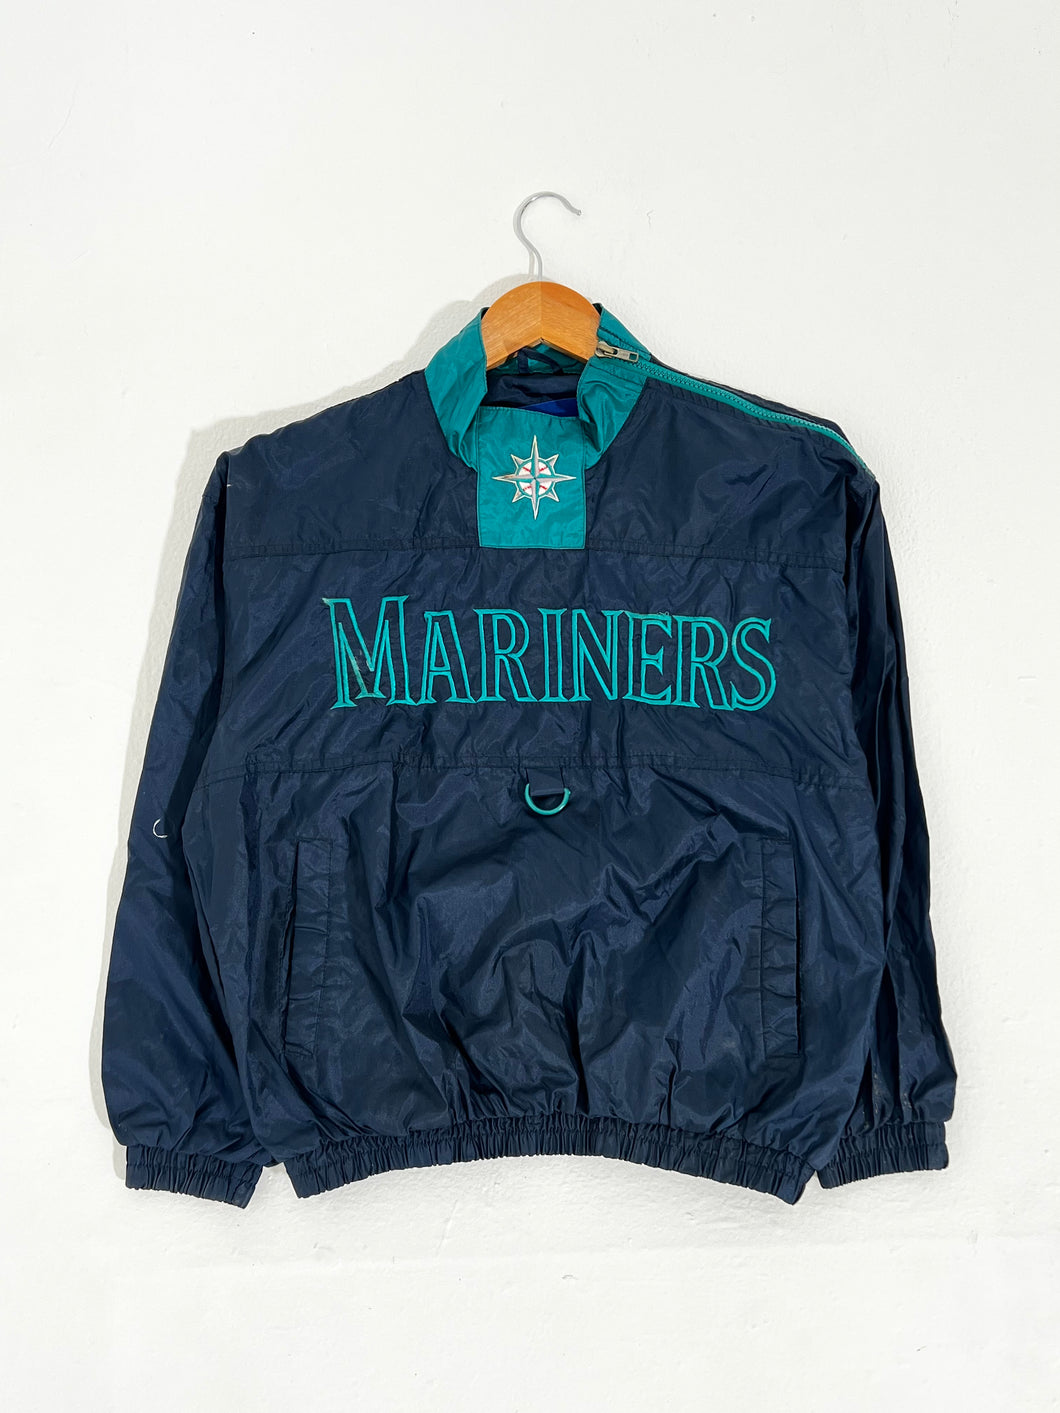 Vintage 1990's FANS GEAR Seattle Mariners Side-Zip